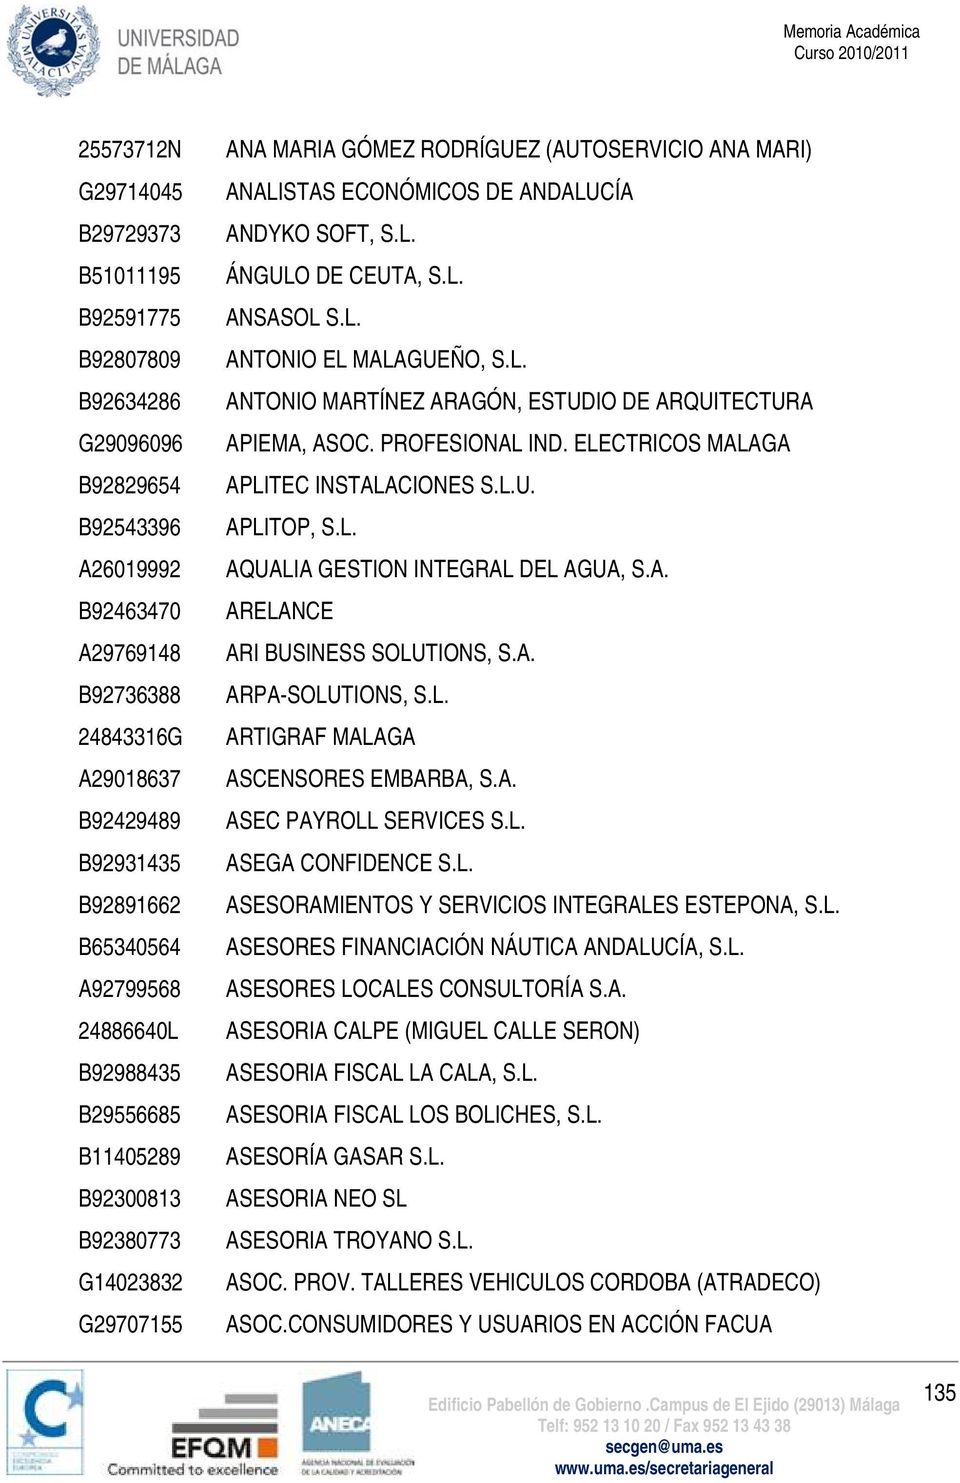 L. ANSASOL S.L. ANTONIO EL MALAGUEÑO, S.L. ANTONIO MARTÍNEZ ARAGÓN, ESTUDIO DE ARQUITECTURA APIEMA, ASOC. PROFESIONAL IND. ELECTRICOS MALAGA APLITEC INSTALACIONES S.L.U. APLITOP, S.L. AQUALIA GESTION INTEGRAL DEL AGUA, S.